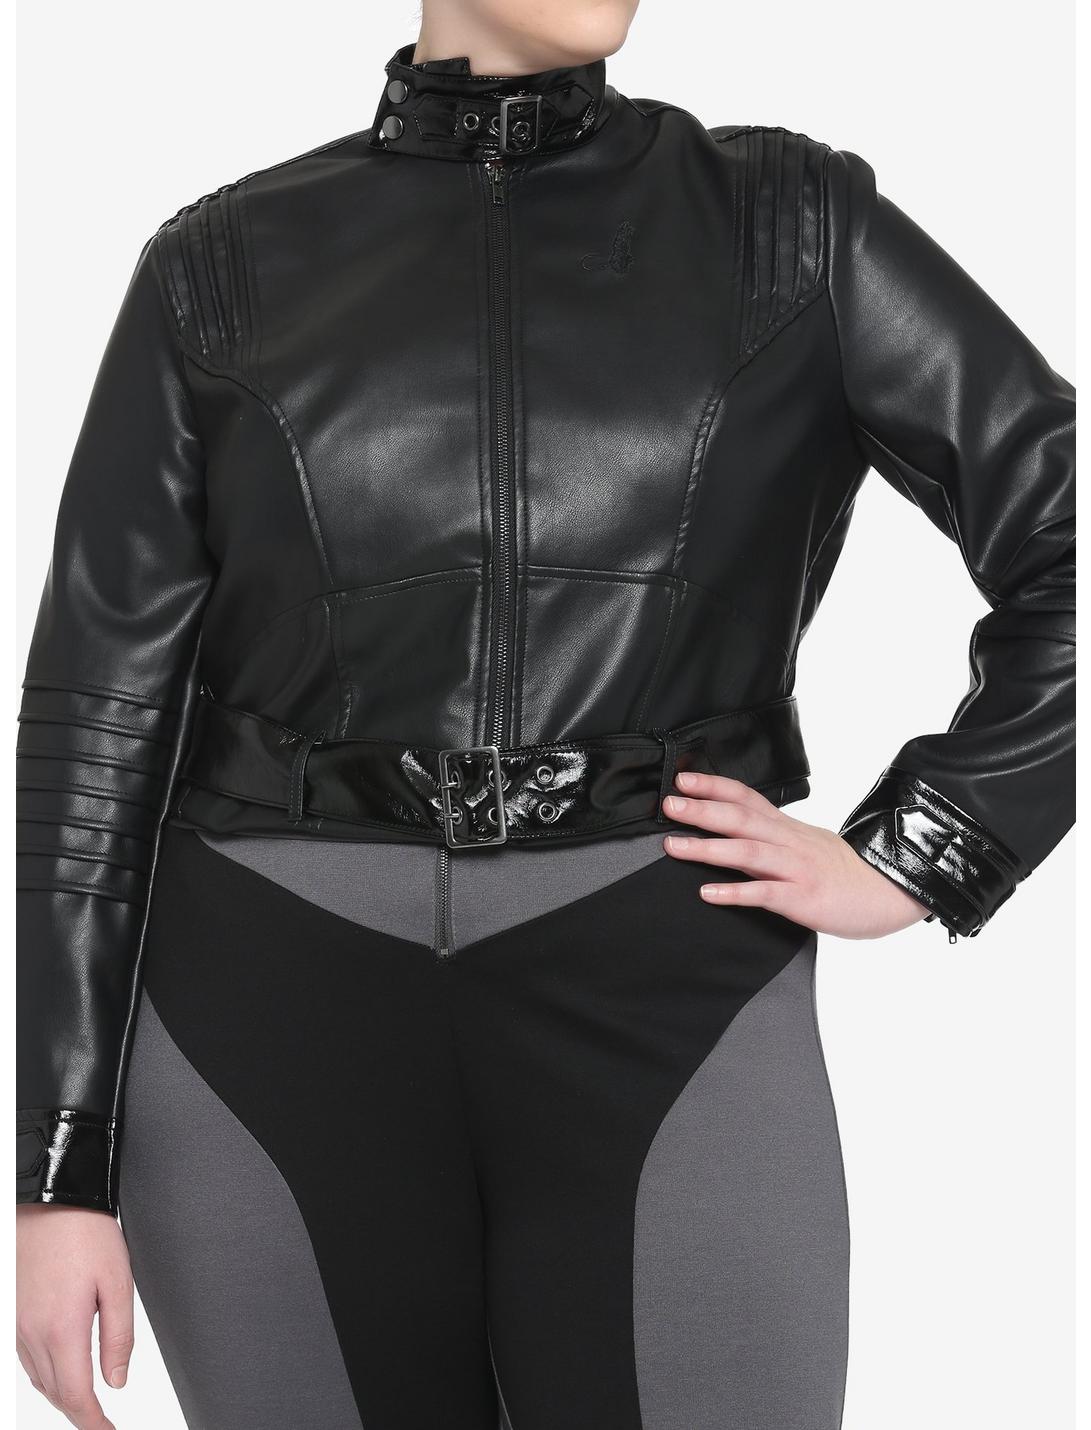 DC Comics The Batman Catwoman Girls Faux Leather Jacket Plus Size, MULTI, hi-res